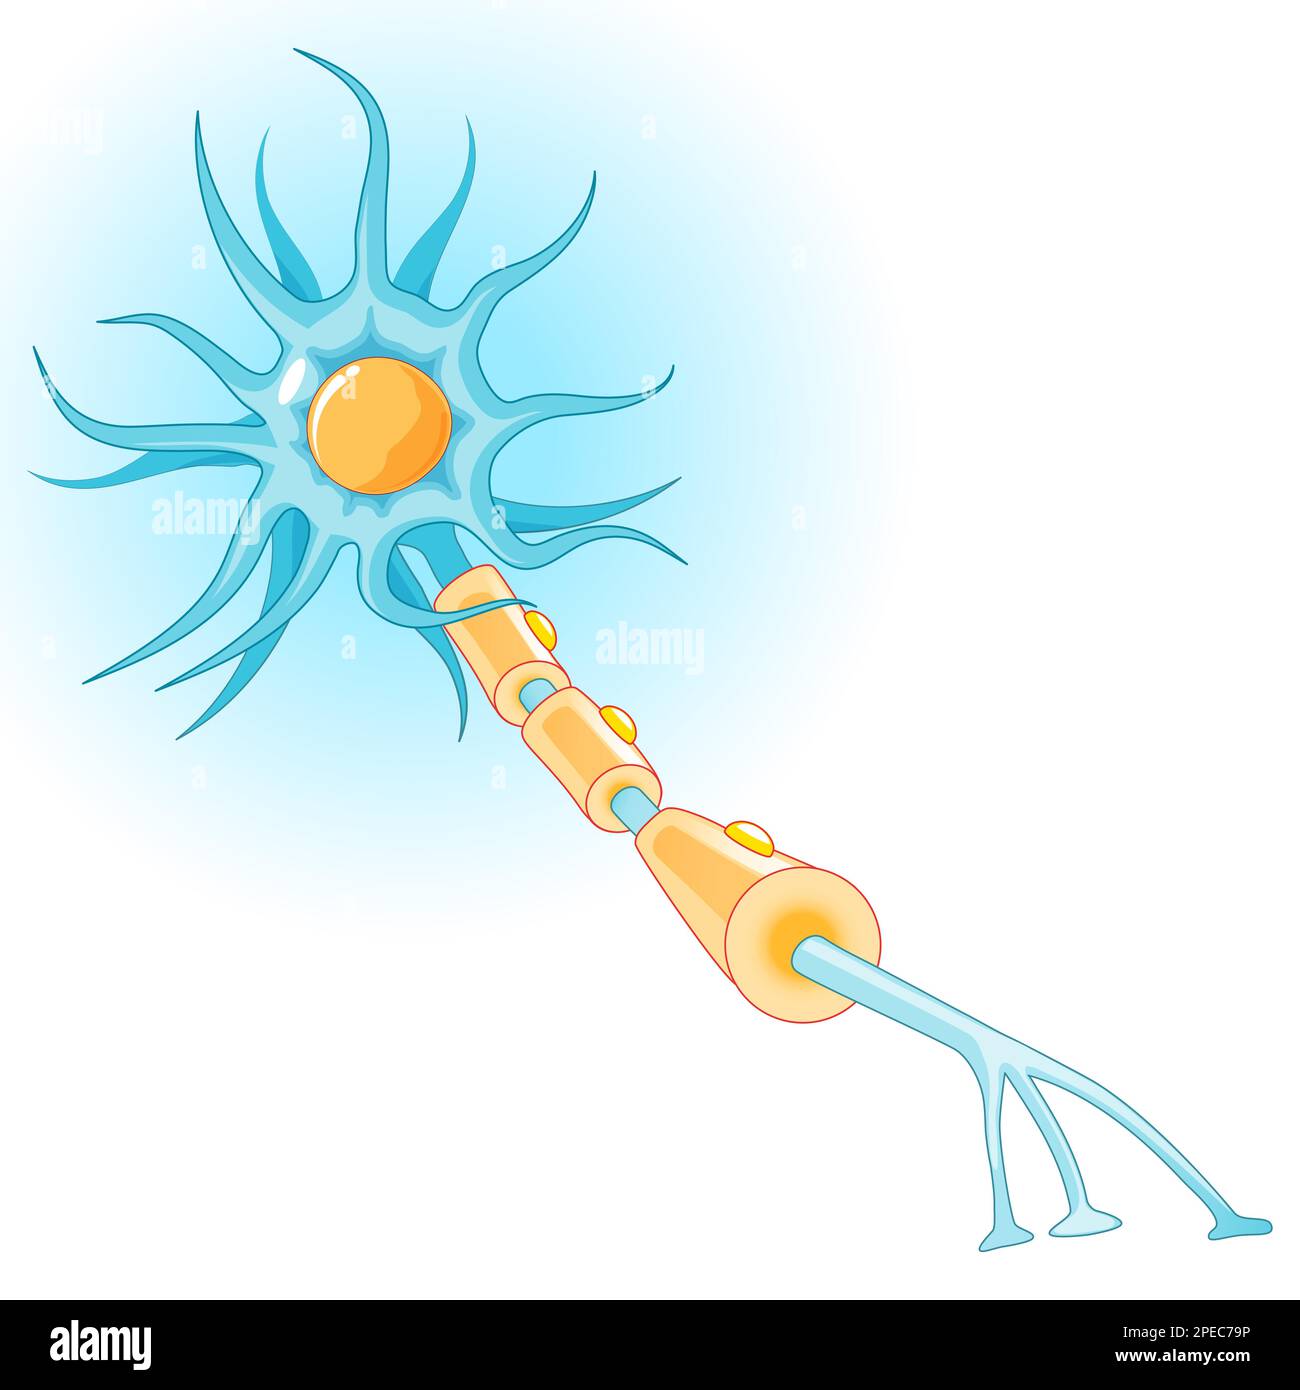 Anatomie eines typischen neurons. Struktur der Nervenzelle: axon, Synapse, Dendrite, Myelinscheide, Ranvier-Knoten und Schwann-Zelle. Vektordiagramm Stock Vektor